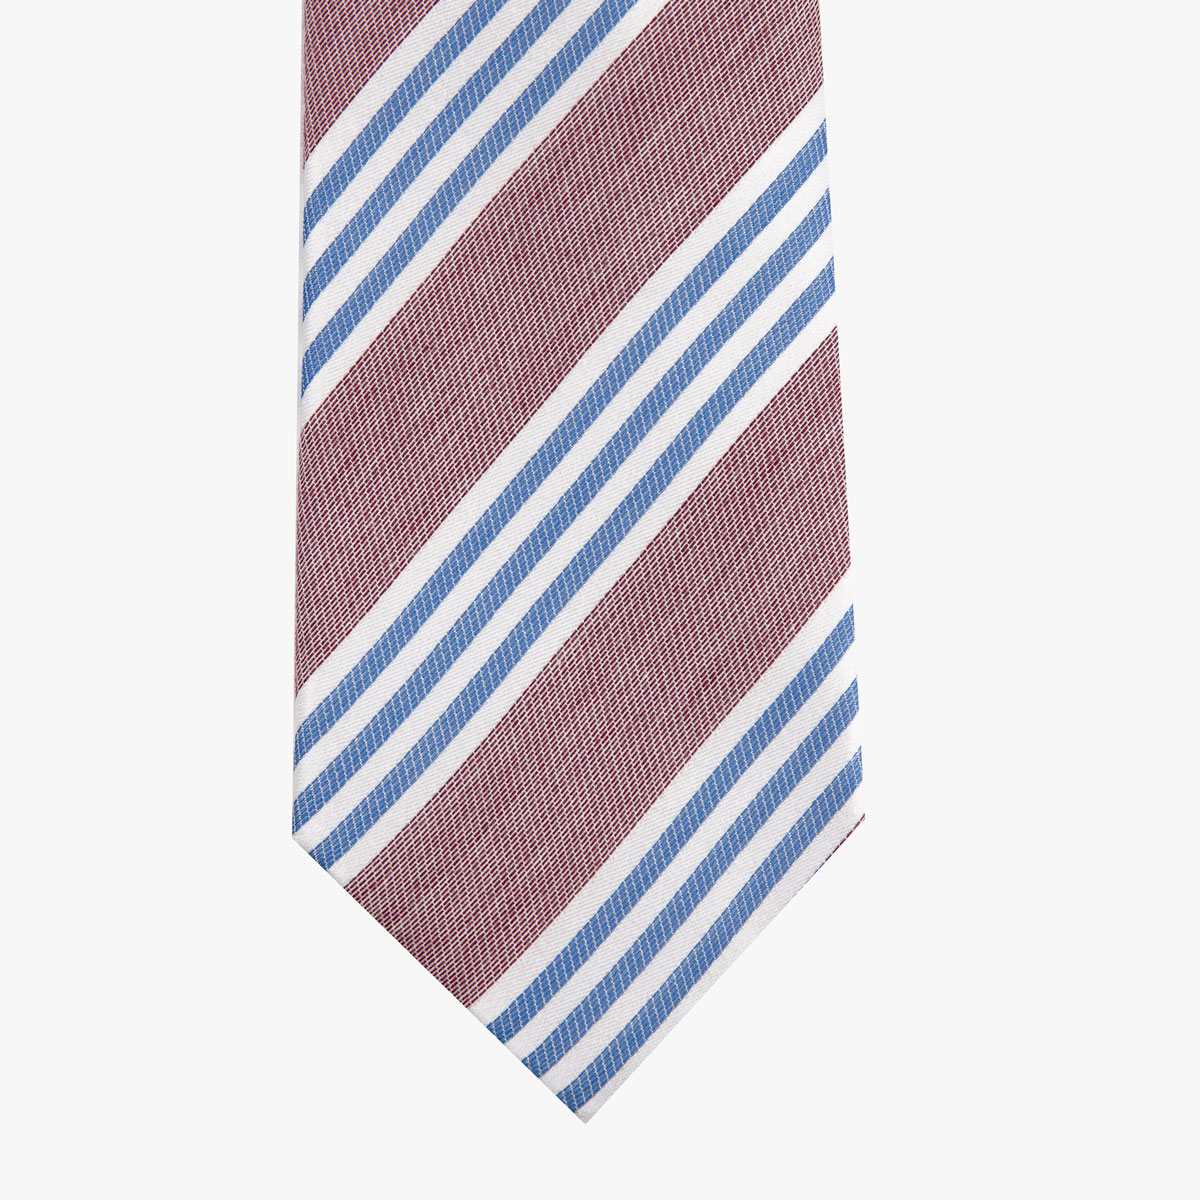 Krawatte glatt gestreift in rot-blau